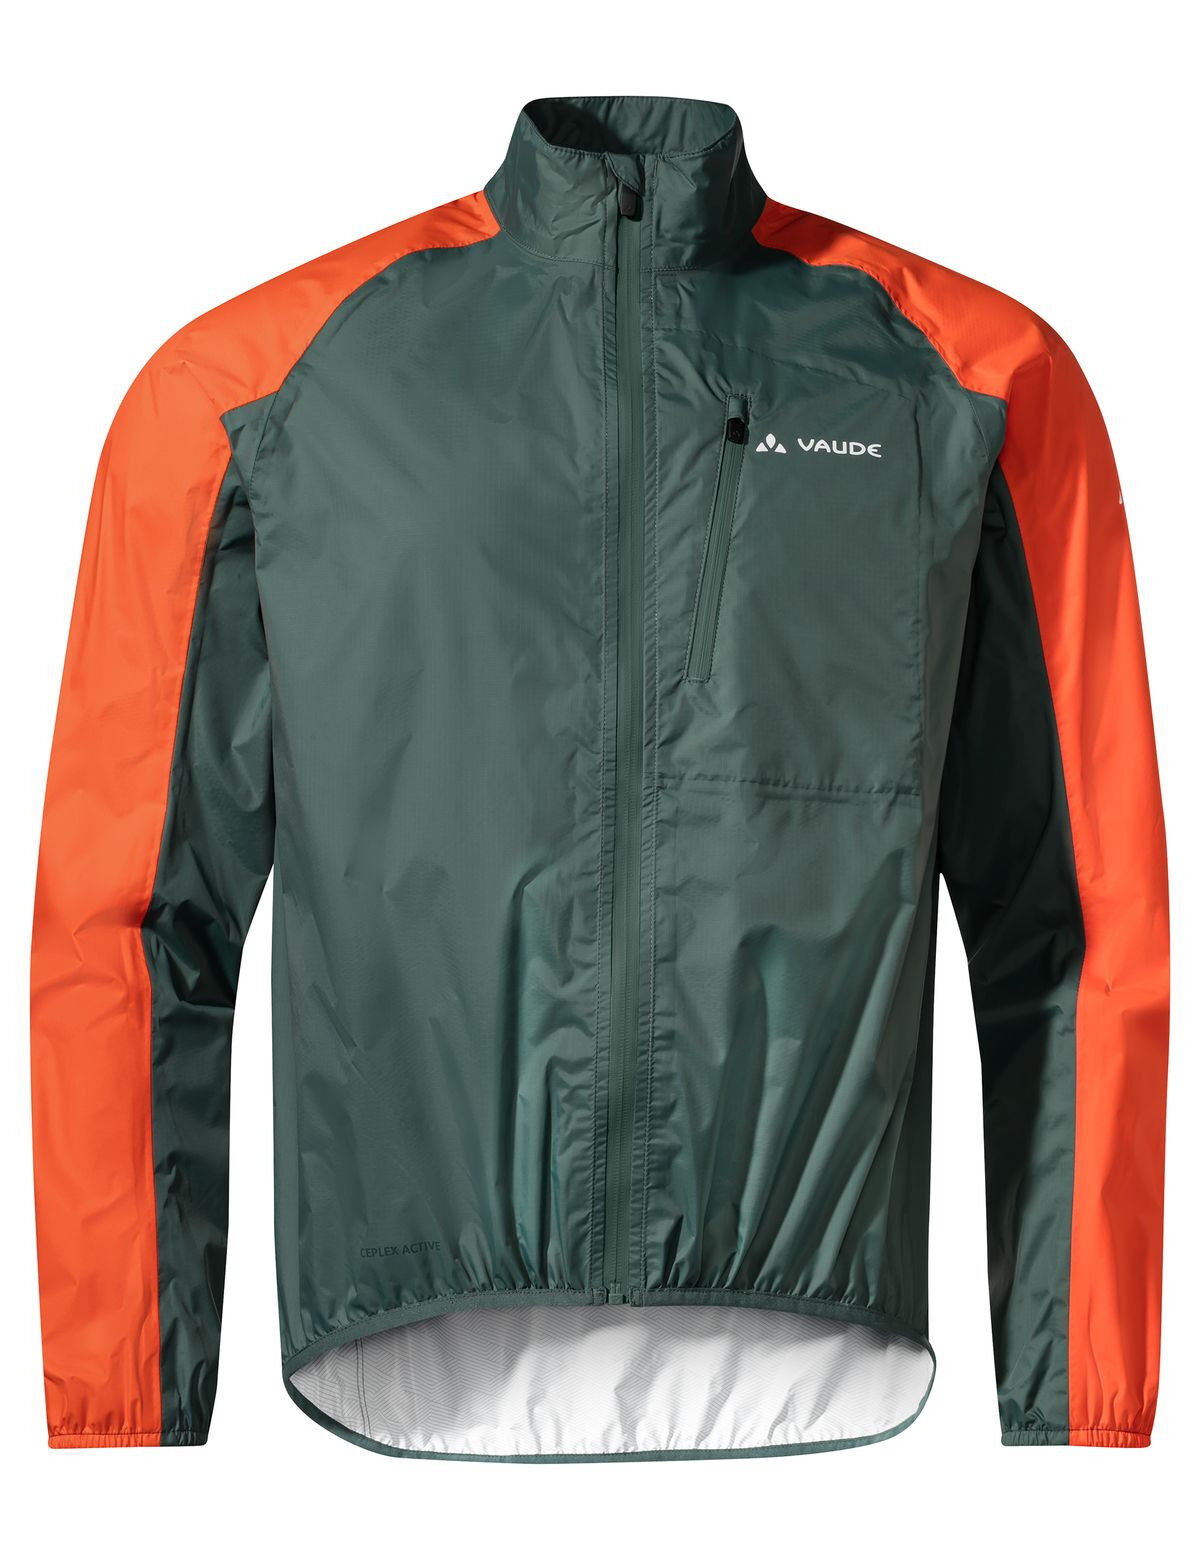 Vaude Drop Jacket III - Cycling jacket - Men's